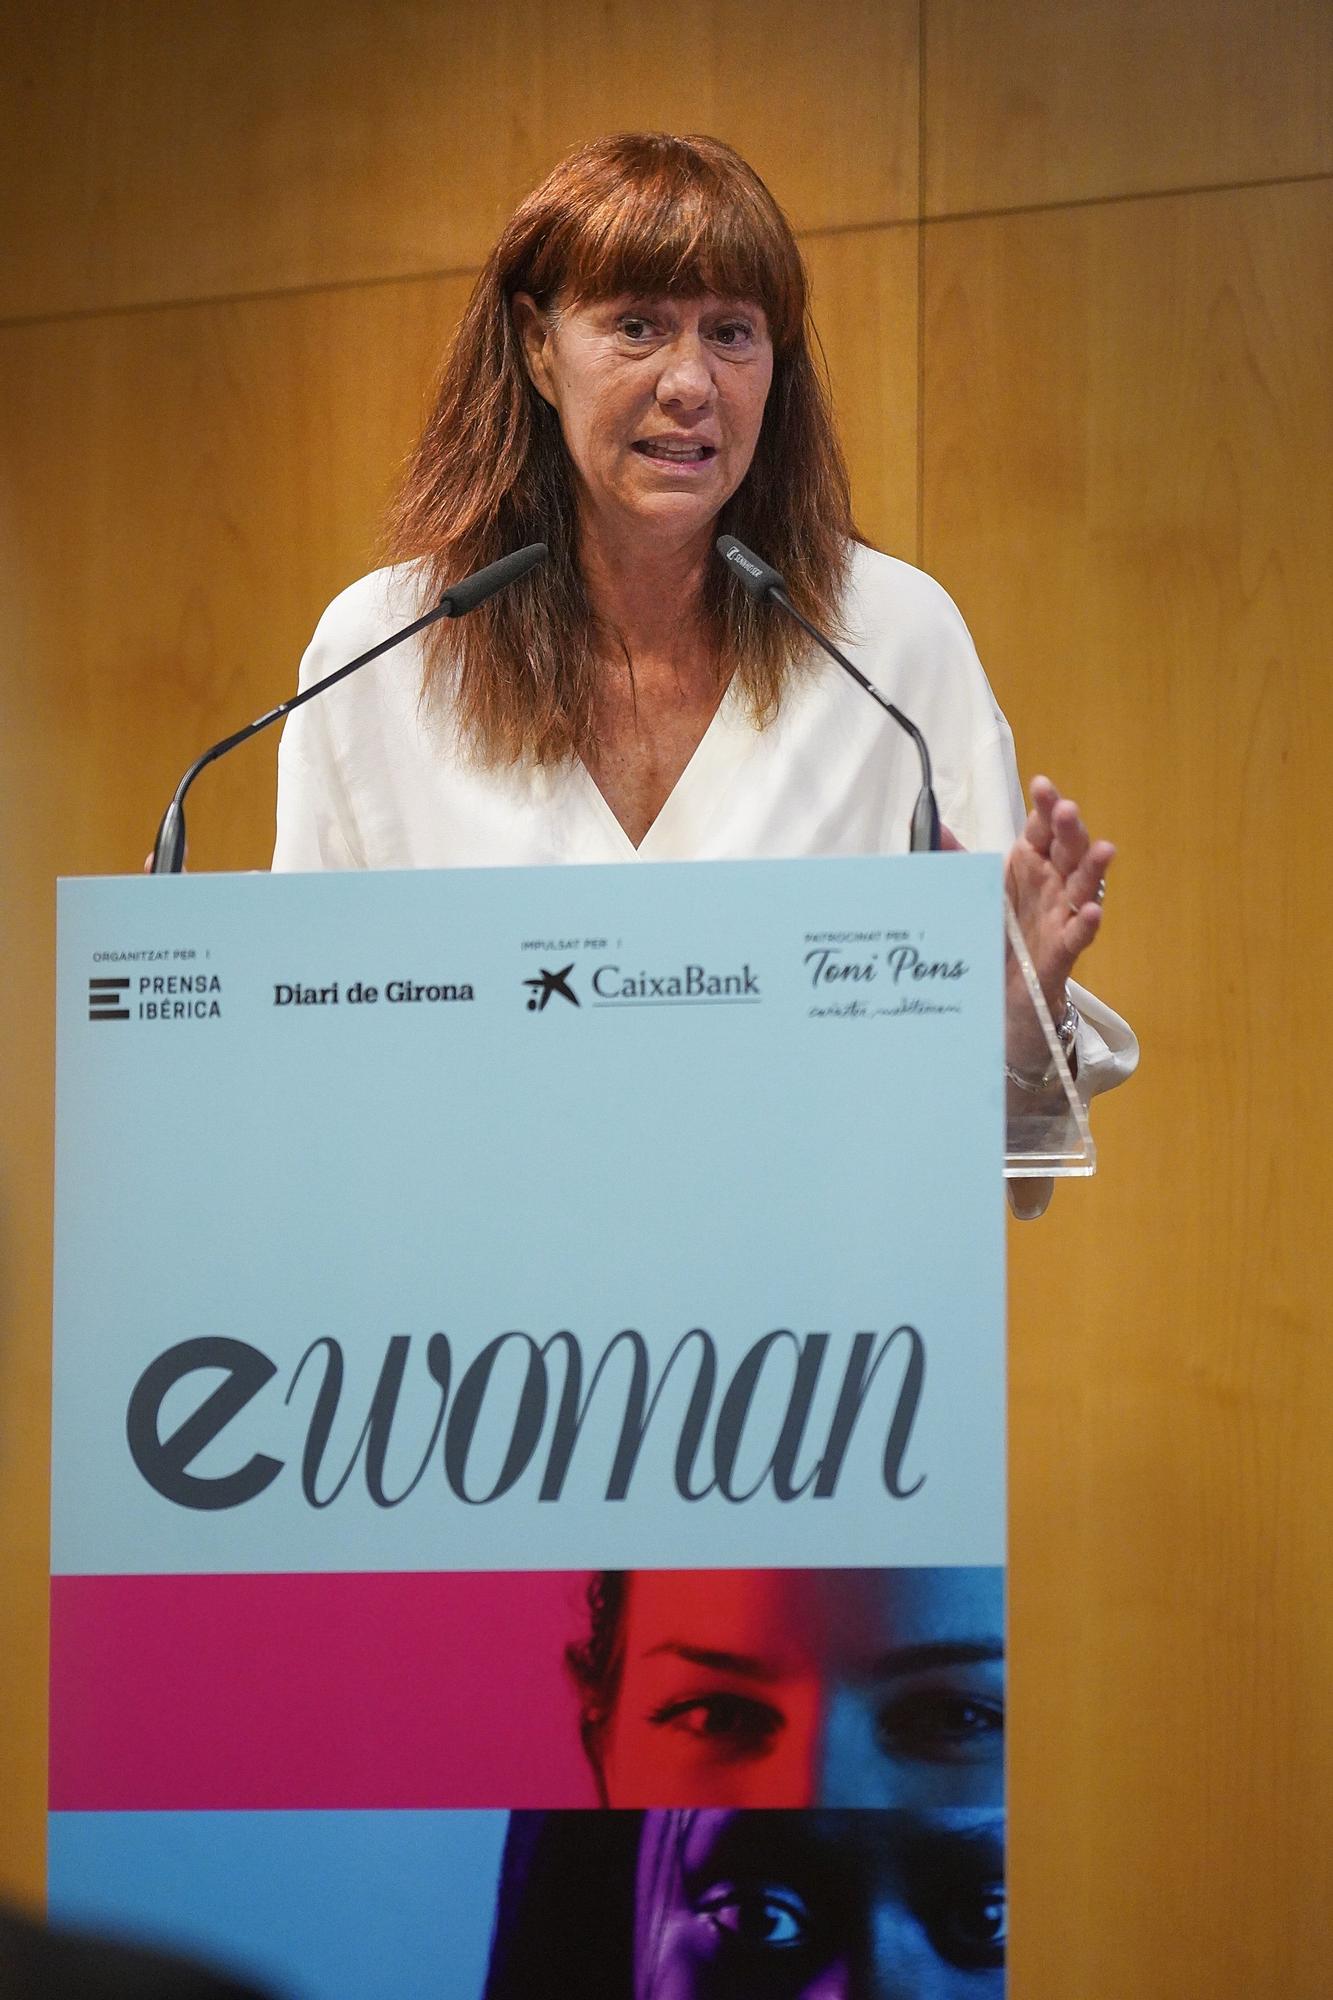 Les millors imatges de l'eWoman a Girona